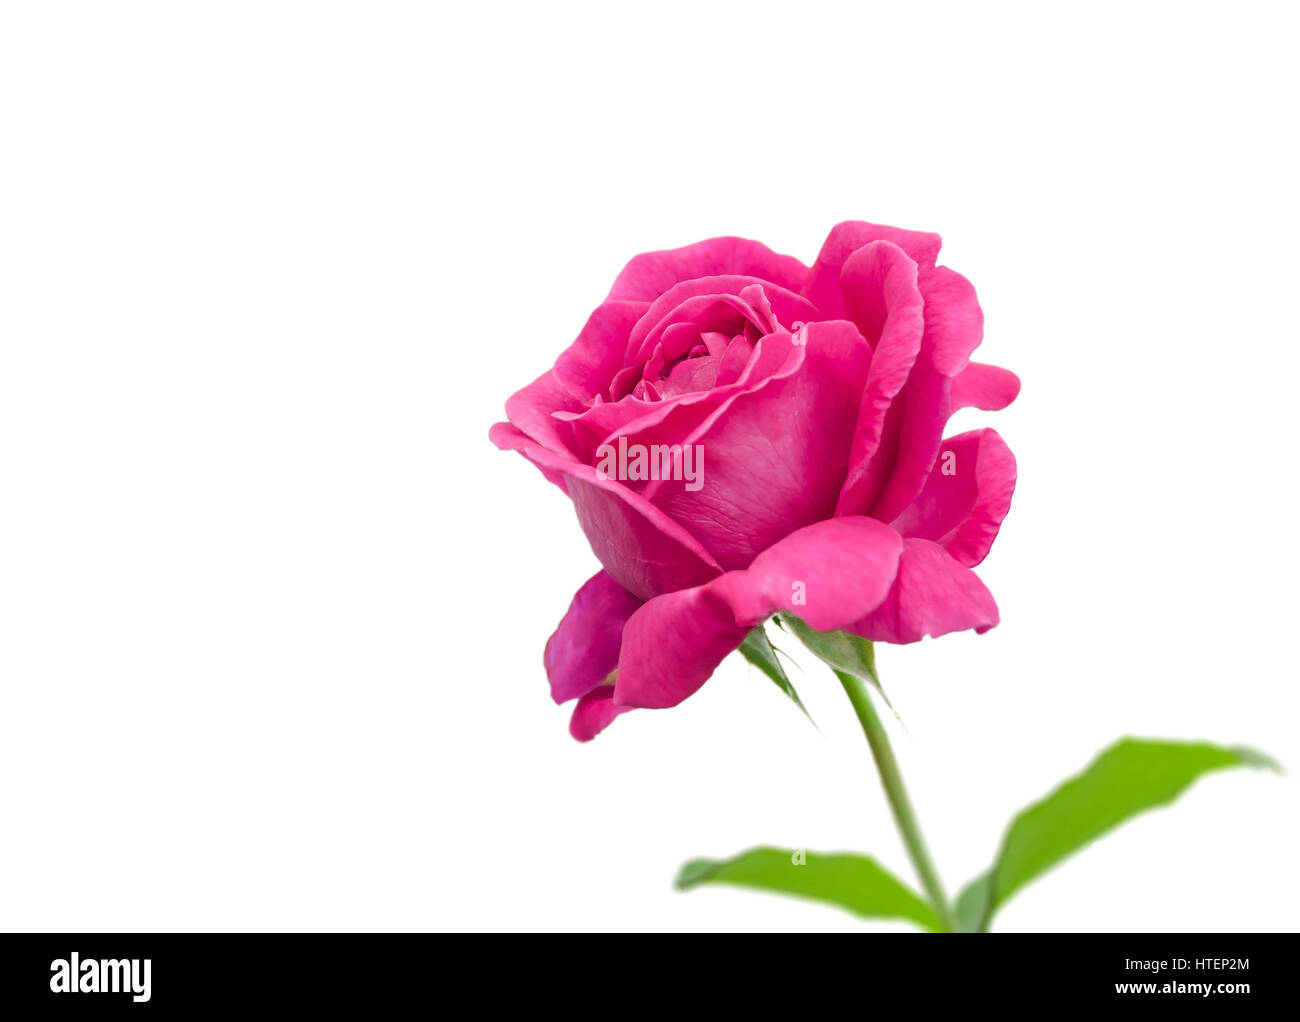 Rosa rose isolierten auf weißen Hintergrund, es gibt Bilder dieser Serie Stockfoto